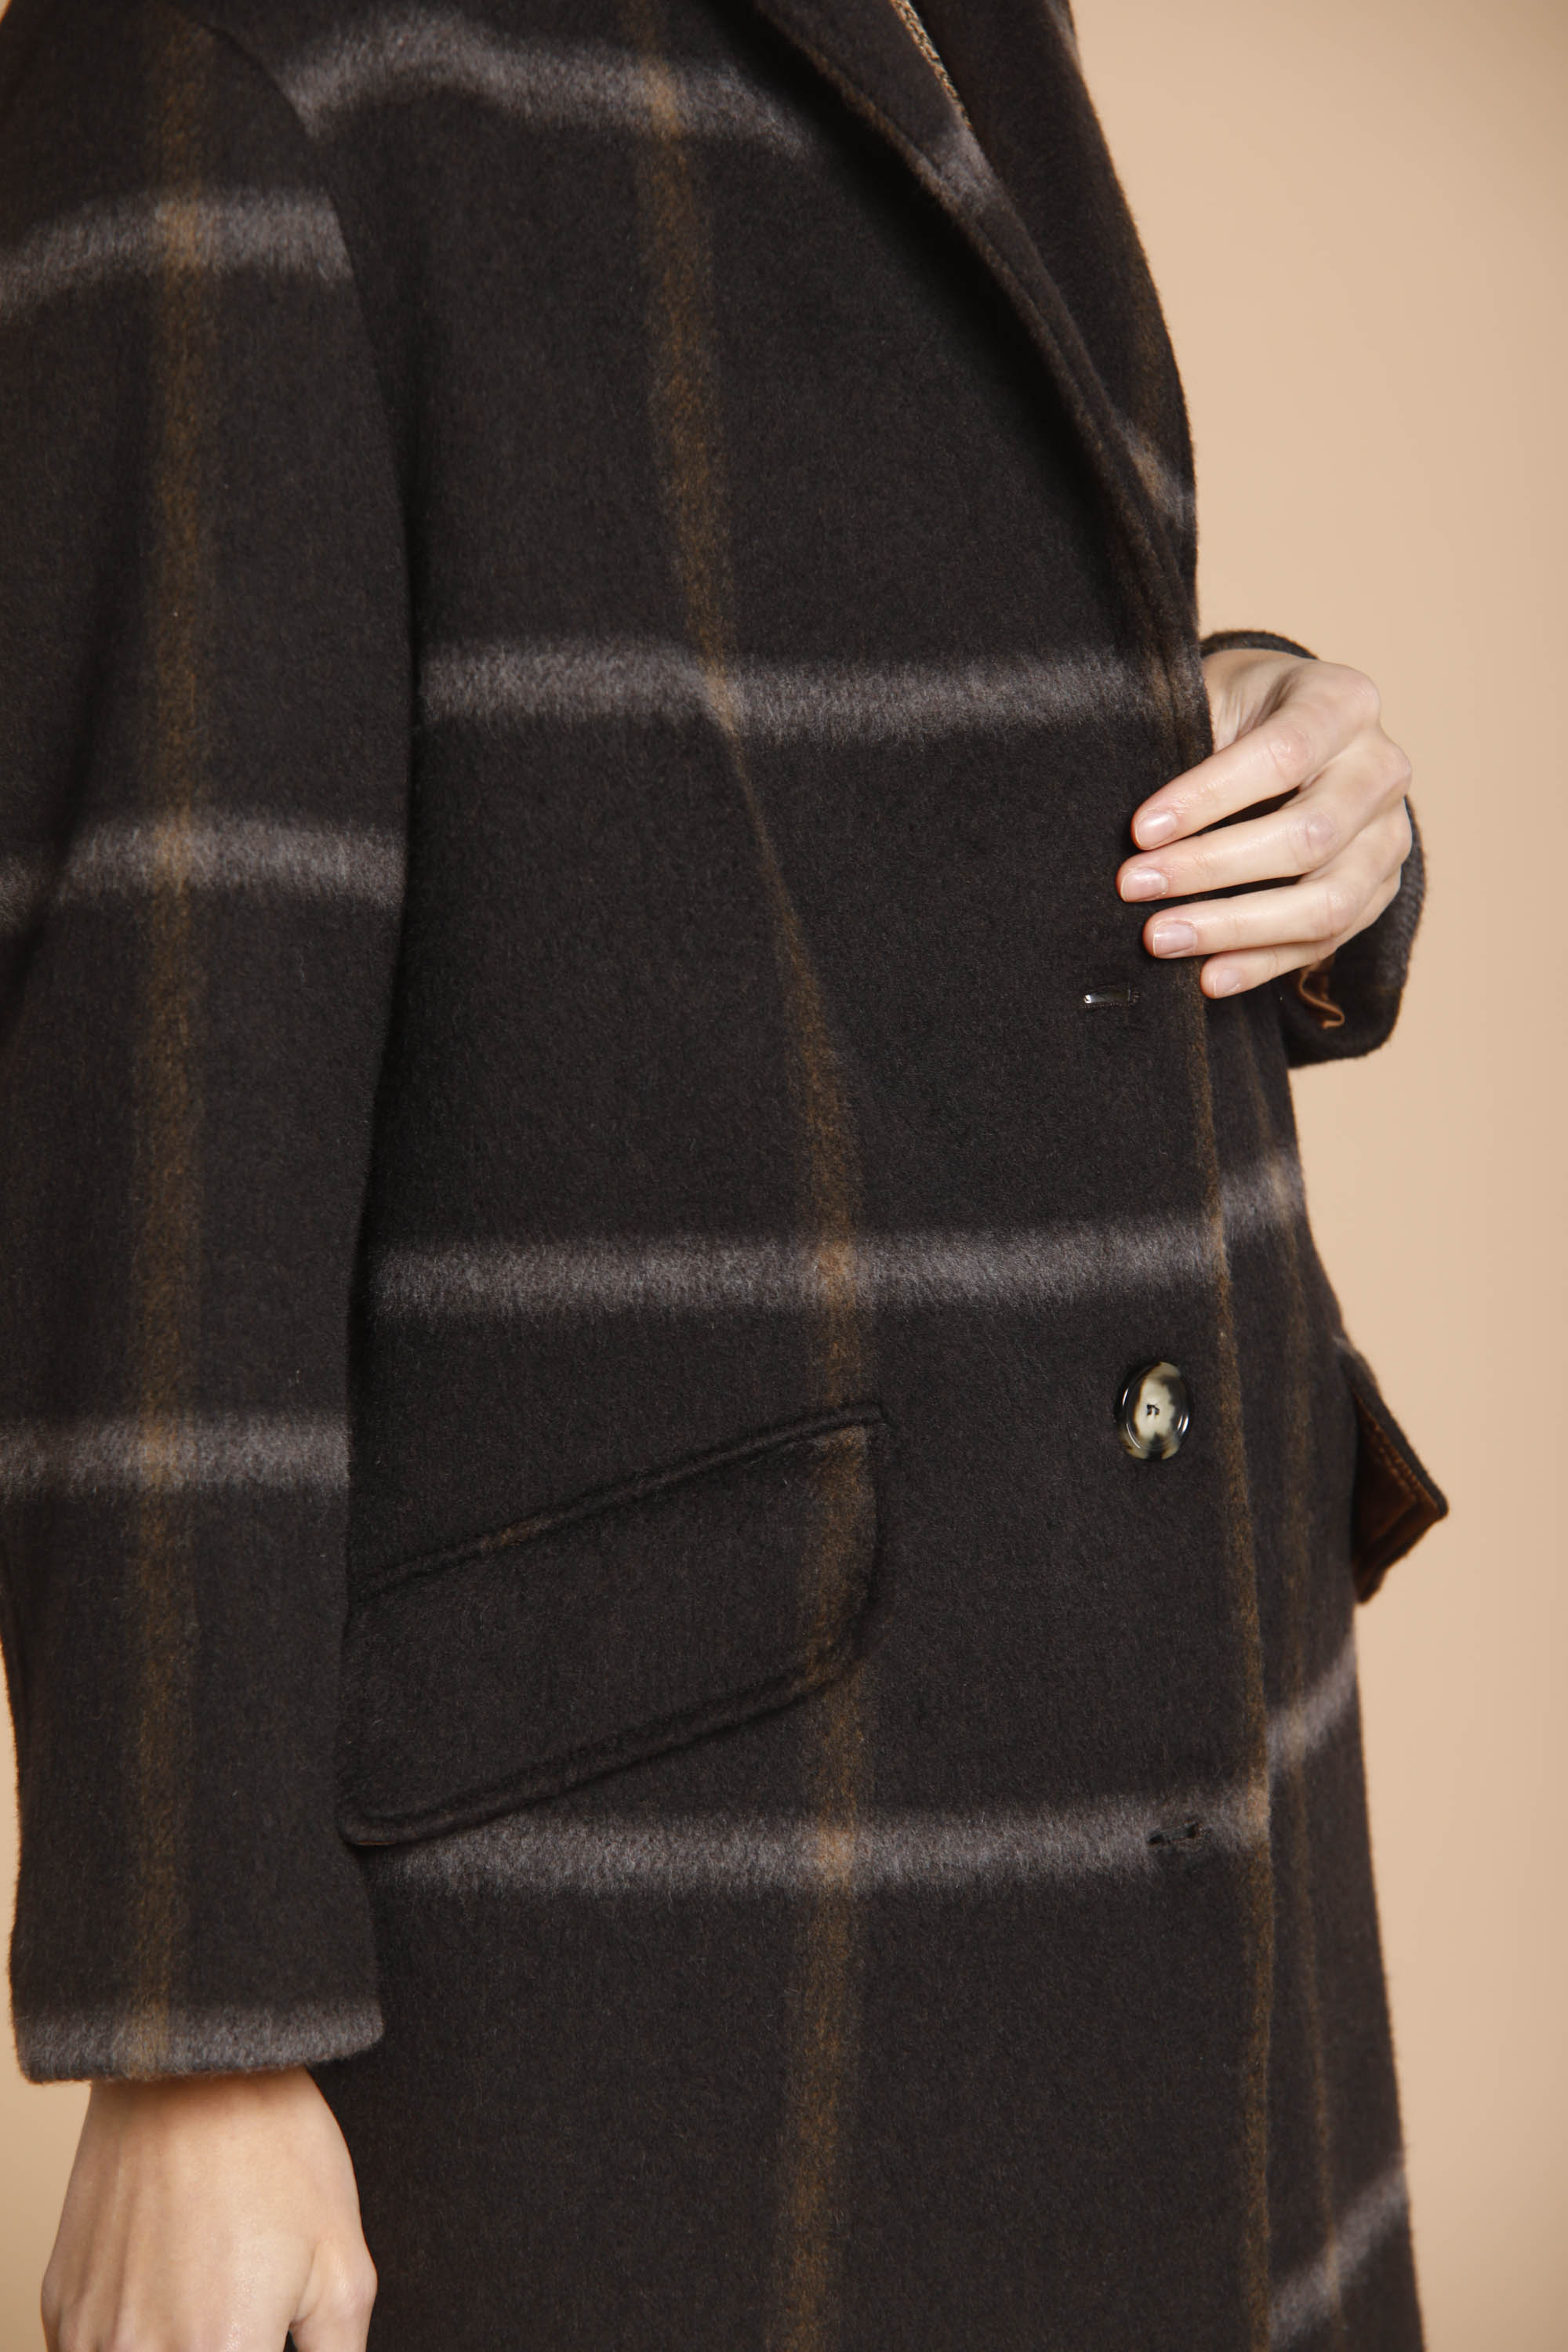 Image 3 de manteau femme en laine modèle Isabel Coat couleur marron motif carré de Mason's